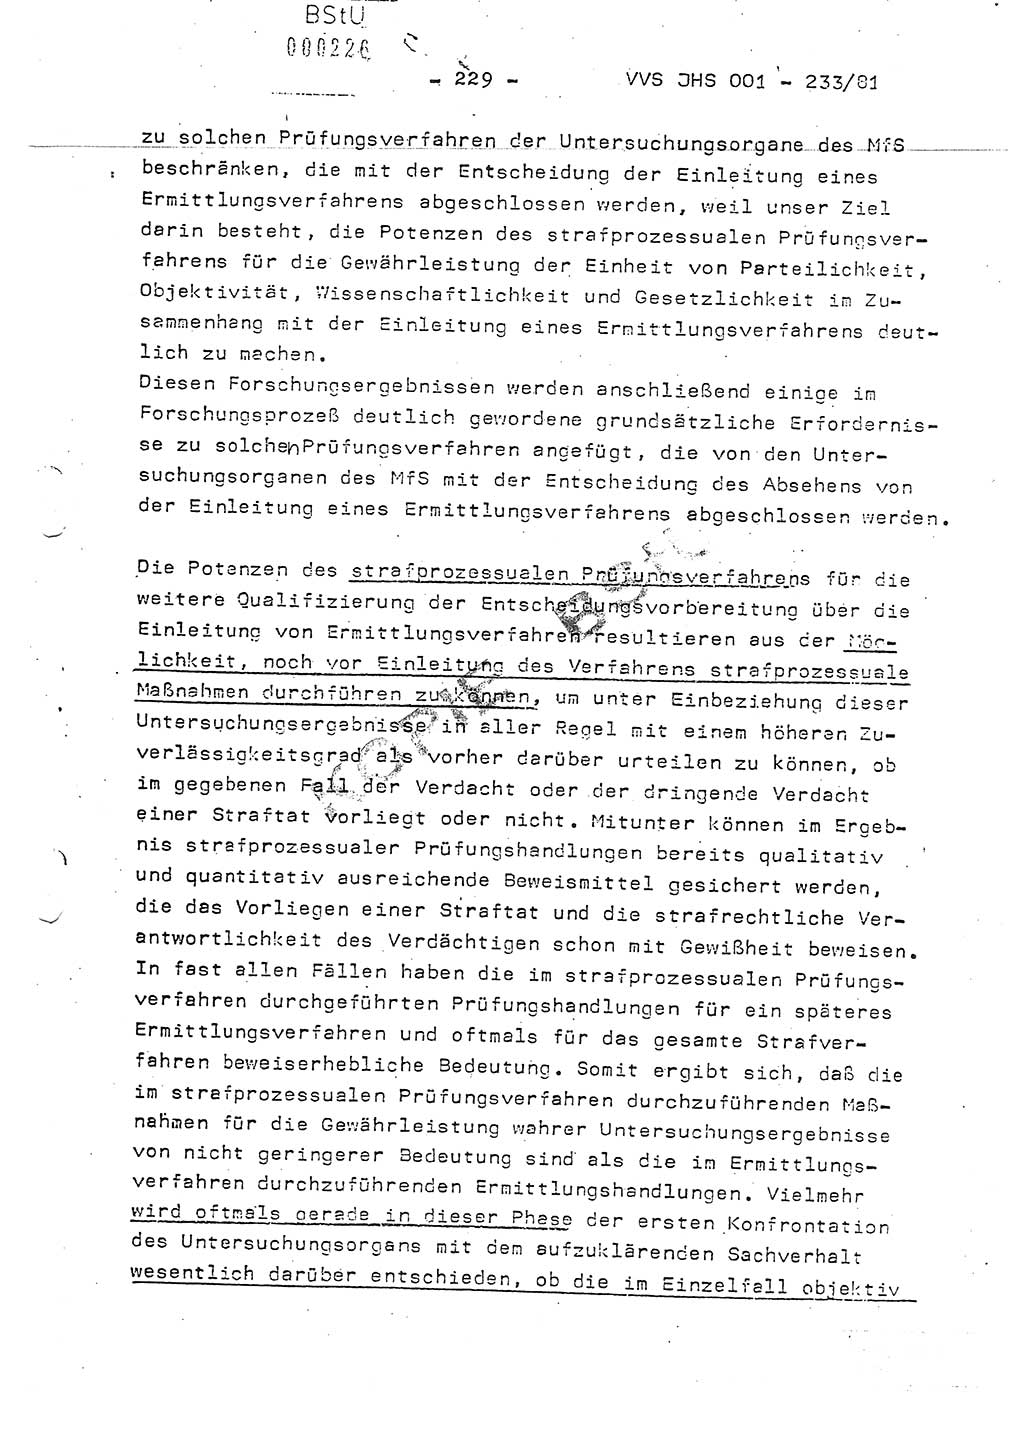 Dissertation Oberstleutnant Horst Zank (JHS), Oberstleutnant Dr. Karl-Heinz Knoblauch (JHS), Oberstleutnant Gustav-Adolf Kowalewski (HA Ⅸ), Oberstleutnant Wolfgang Plötner (HA Ⅸ), Ministerium für Staatssicherheit (MfS) [Deutsche Demokratische Republik (DDR)], Juristische Hochschule (JHS), Vertrauliche Verschlußsache (VVS) o001-233/81, Potsdam 1981, Blatt 229 (Diss. MfS DDR JHS VVS o001-233/81 1981, Bl. 229)